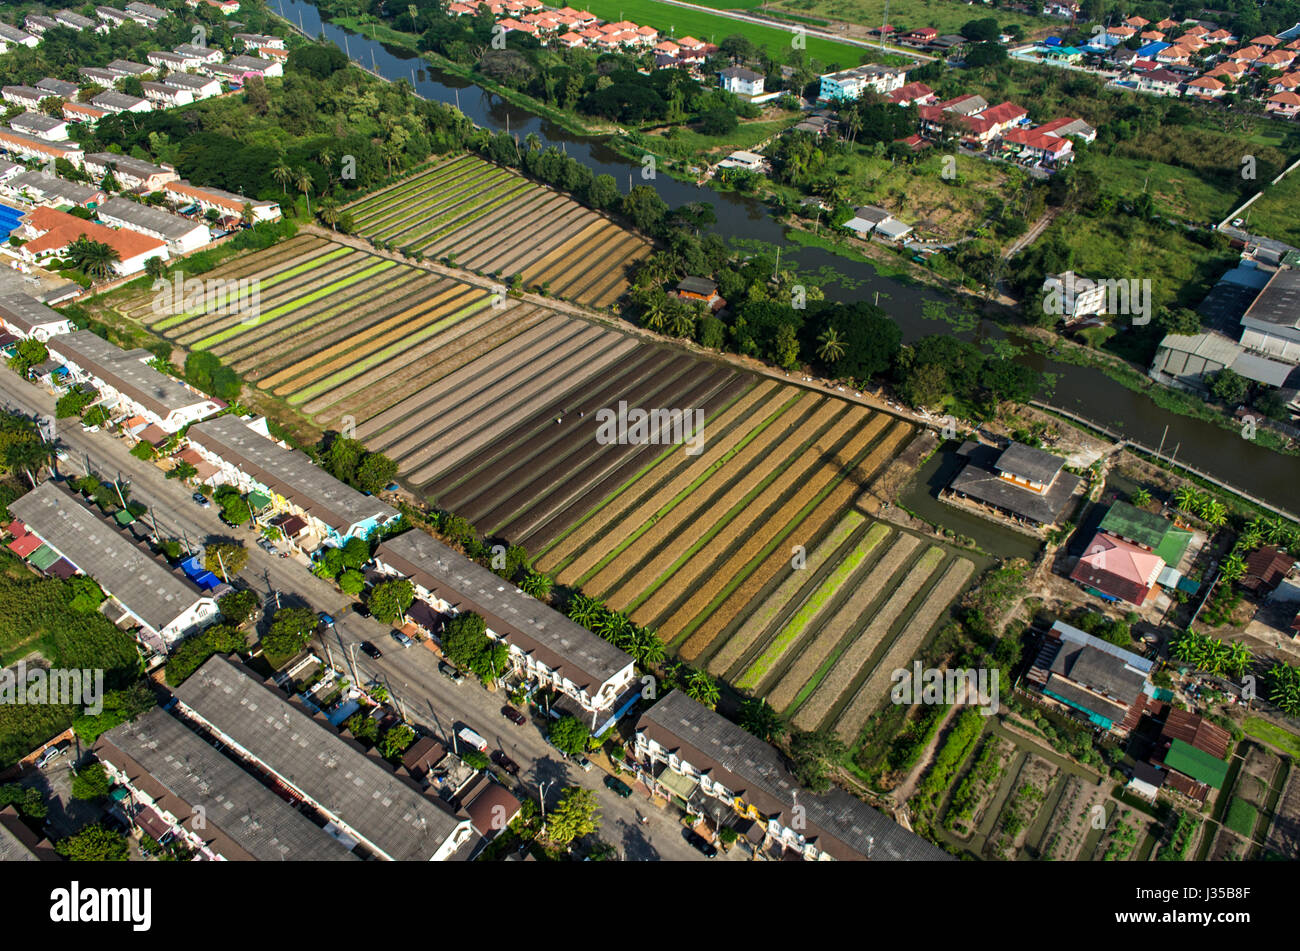 La culture des légumes biologiques, l'Agriculture en Thaïlande Photographie aérienne Banque D'Images